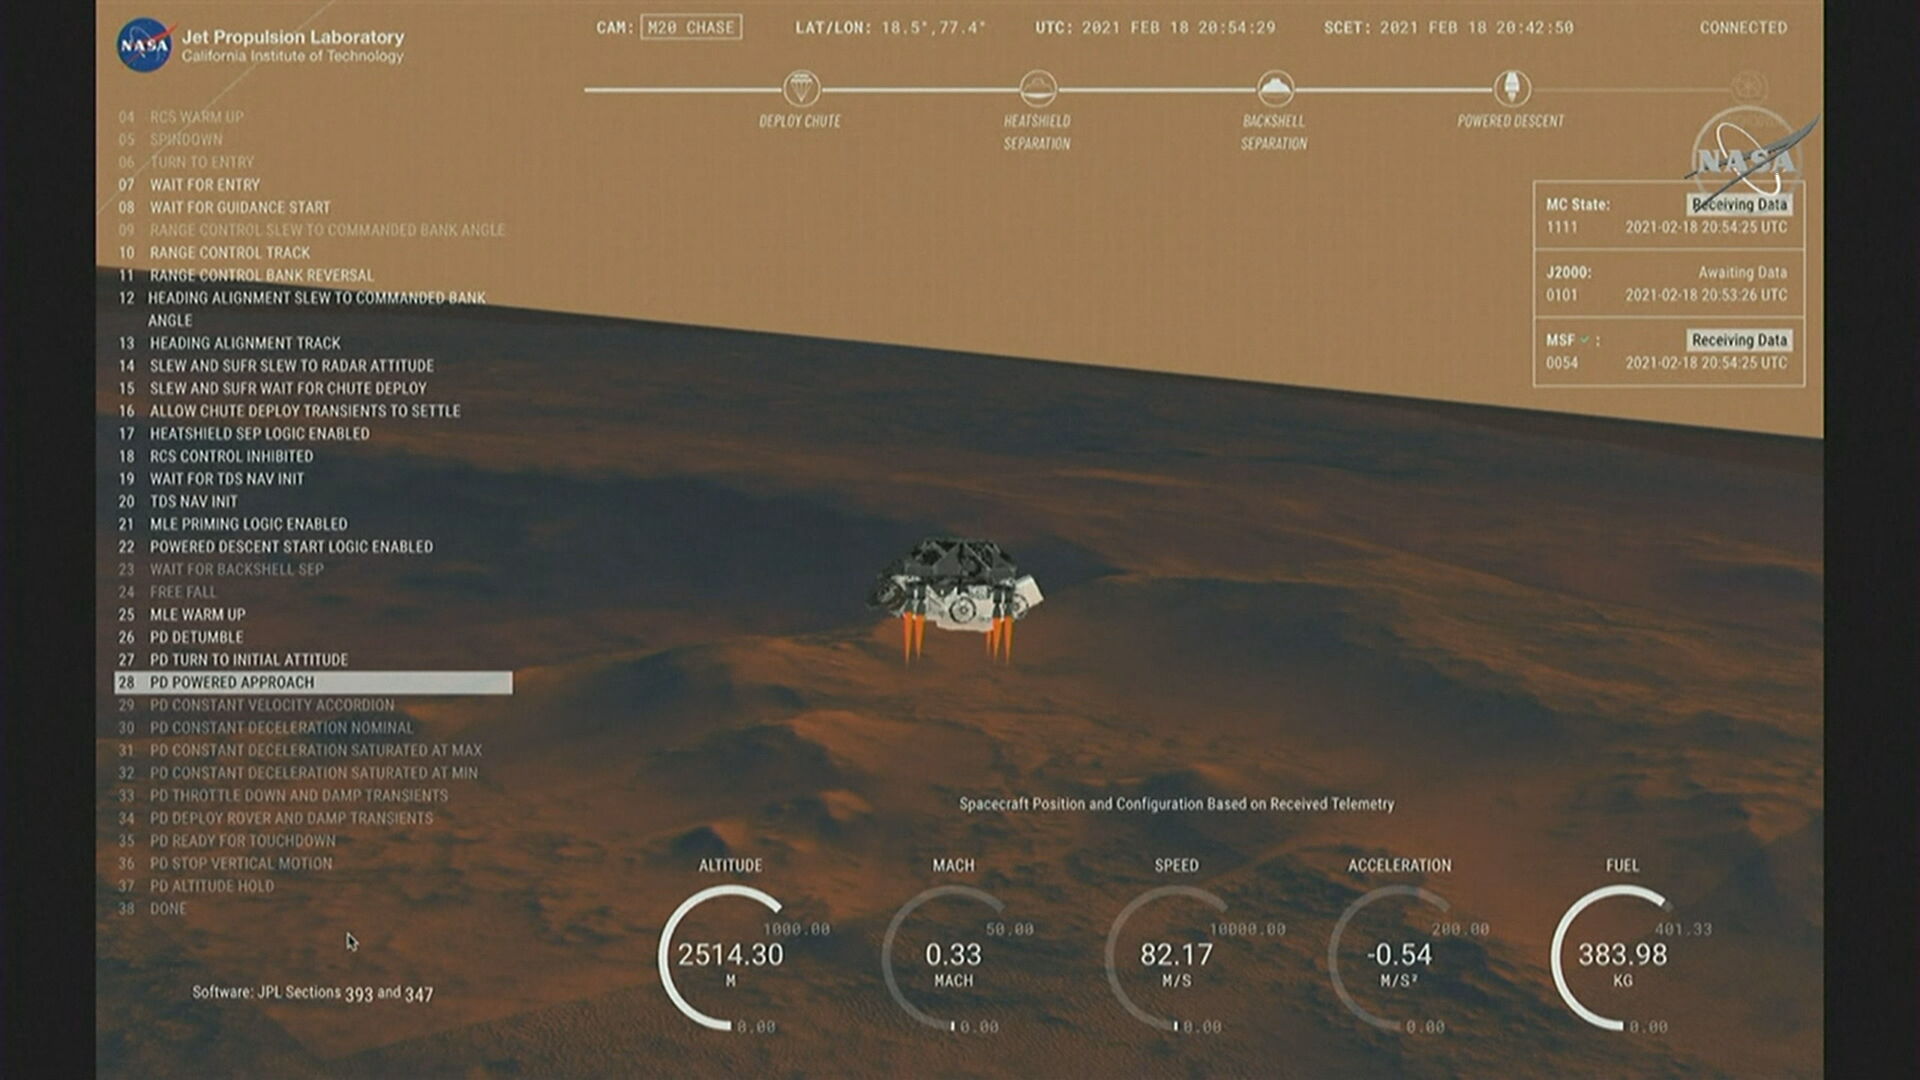 Sonda da Nasa investigará vestígios de vida em Marte